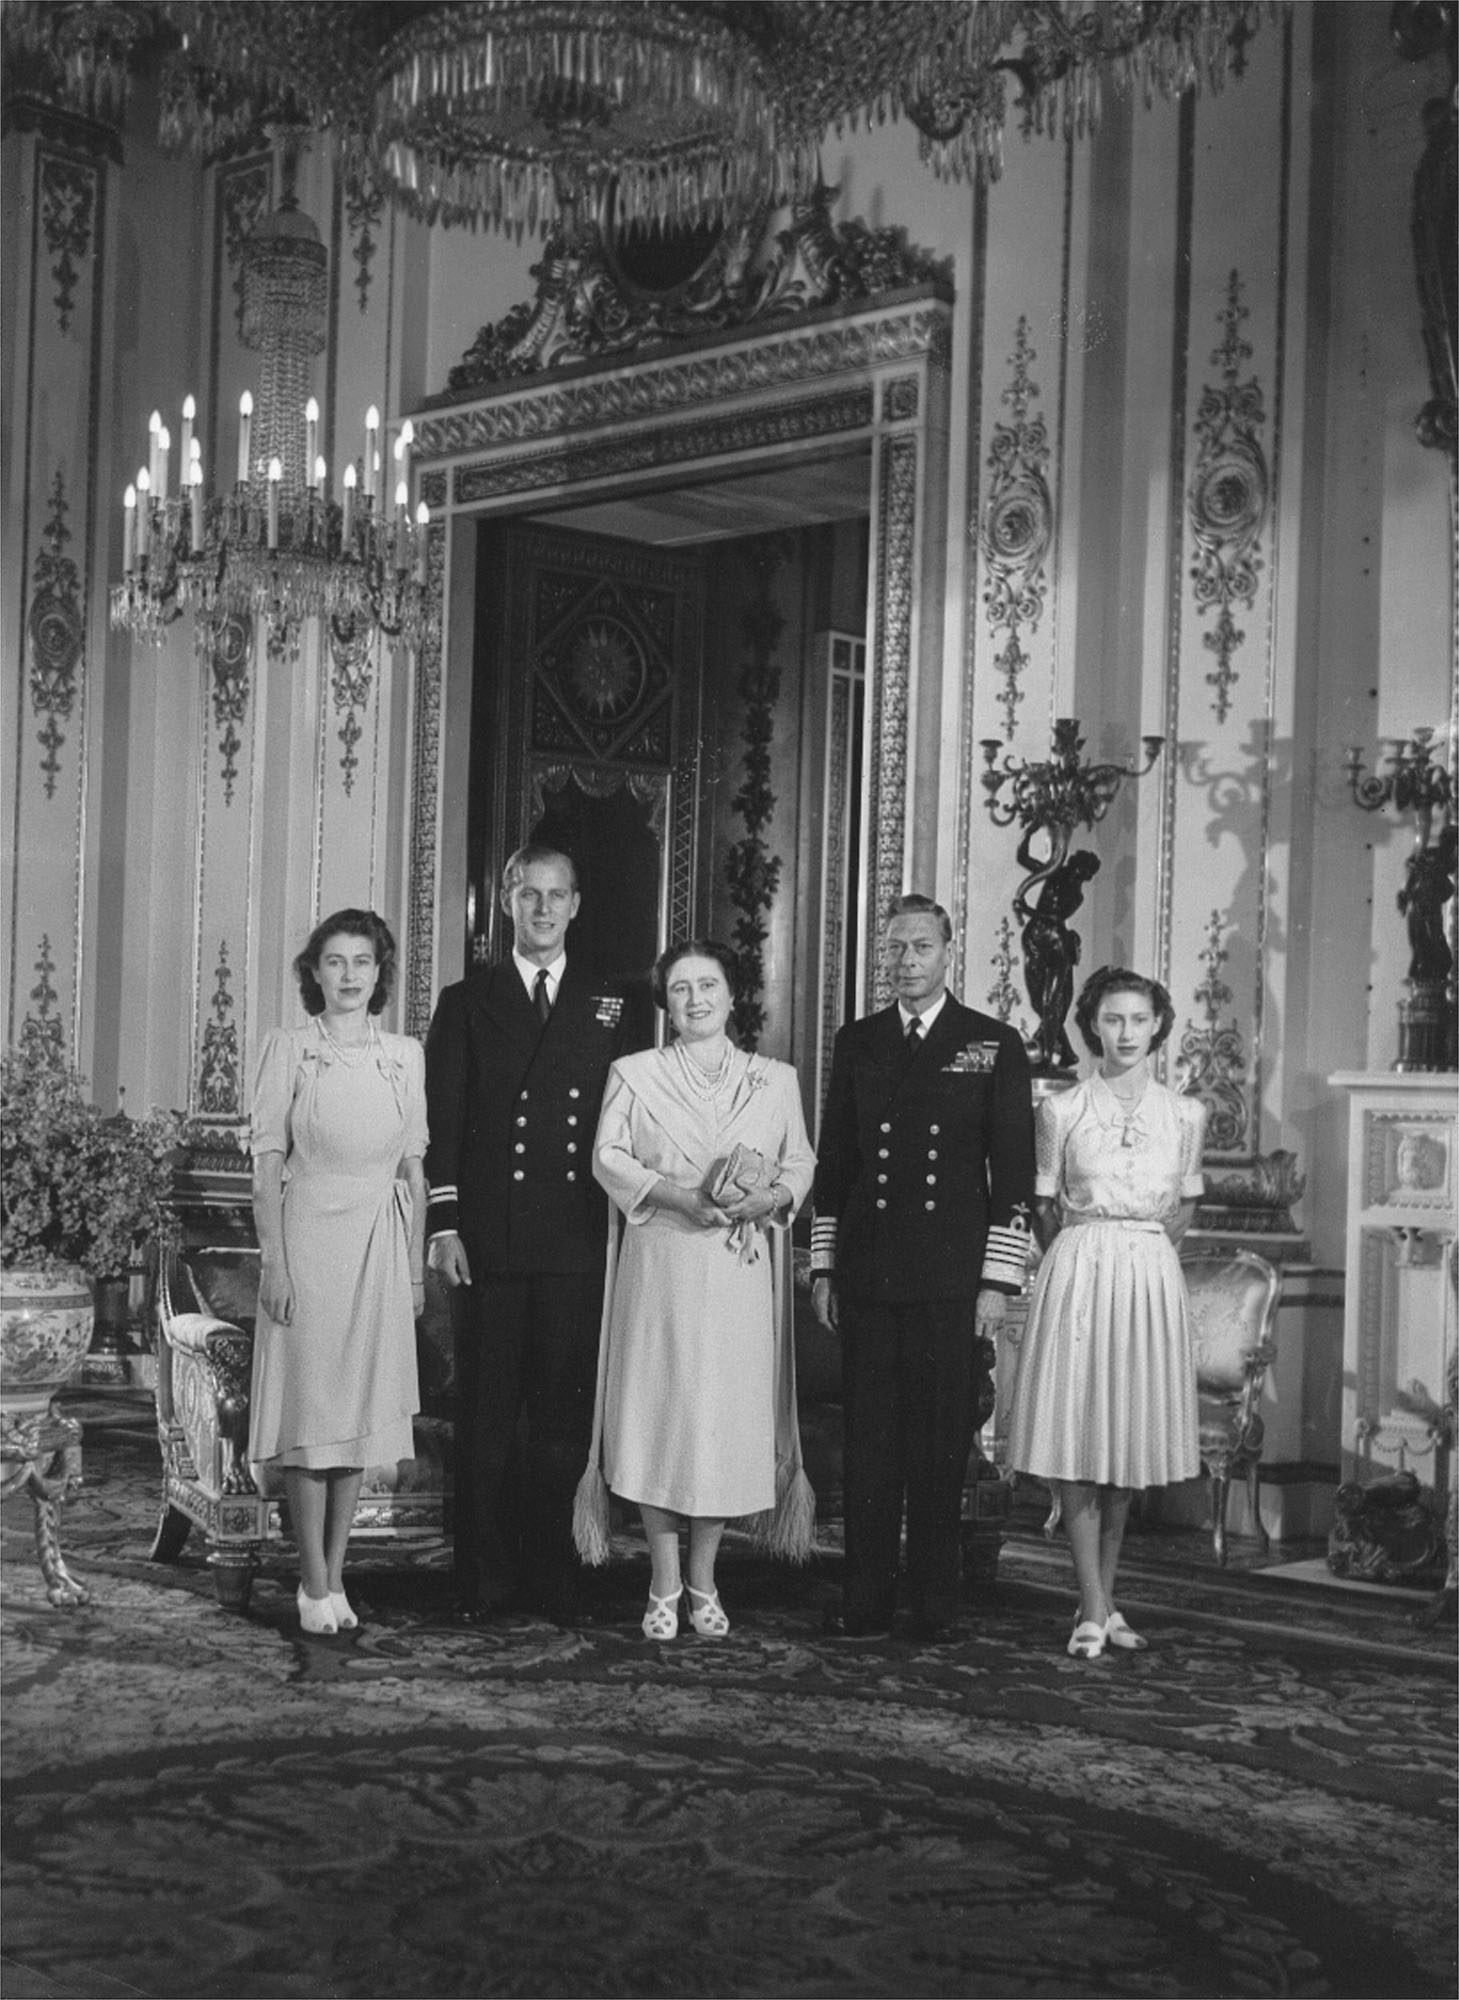 La familia real británica, en una imagen de 1947. Margarita, a la derecha.